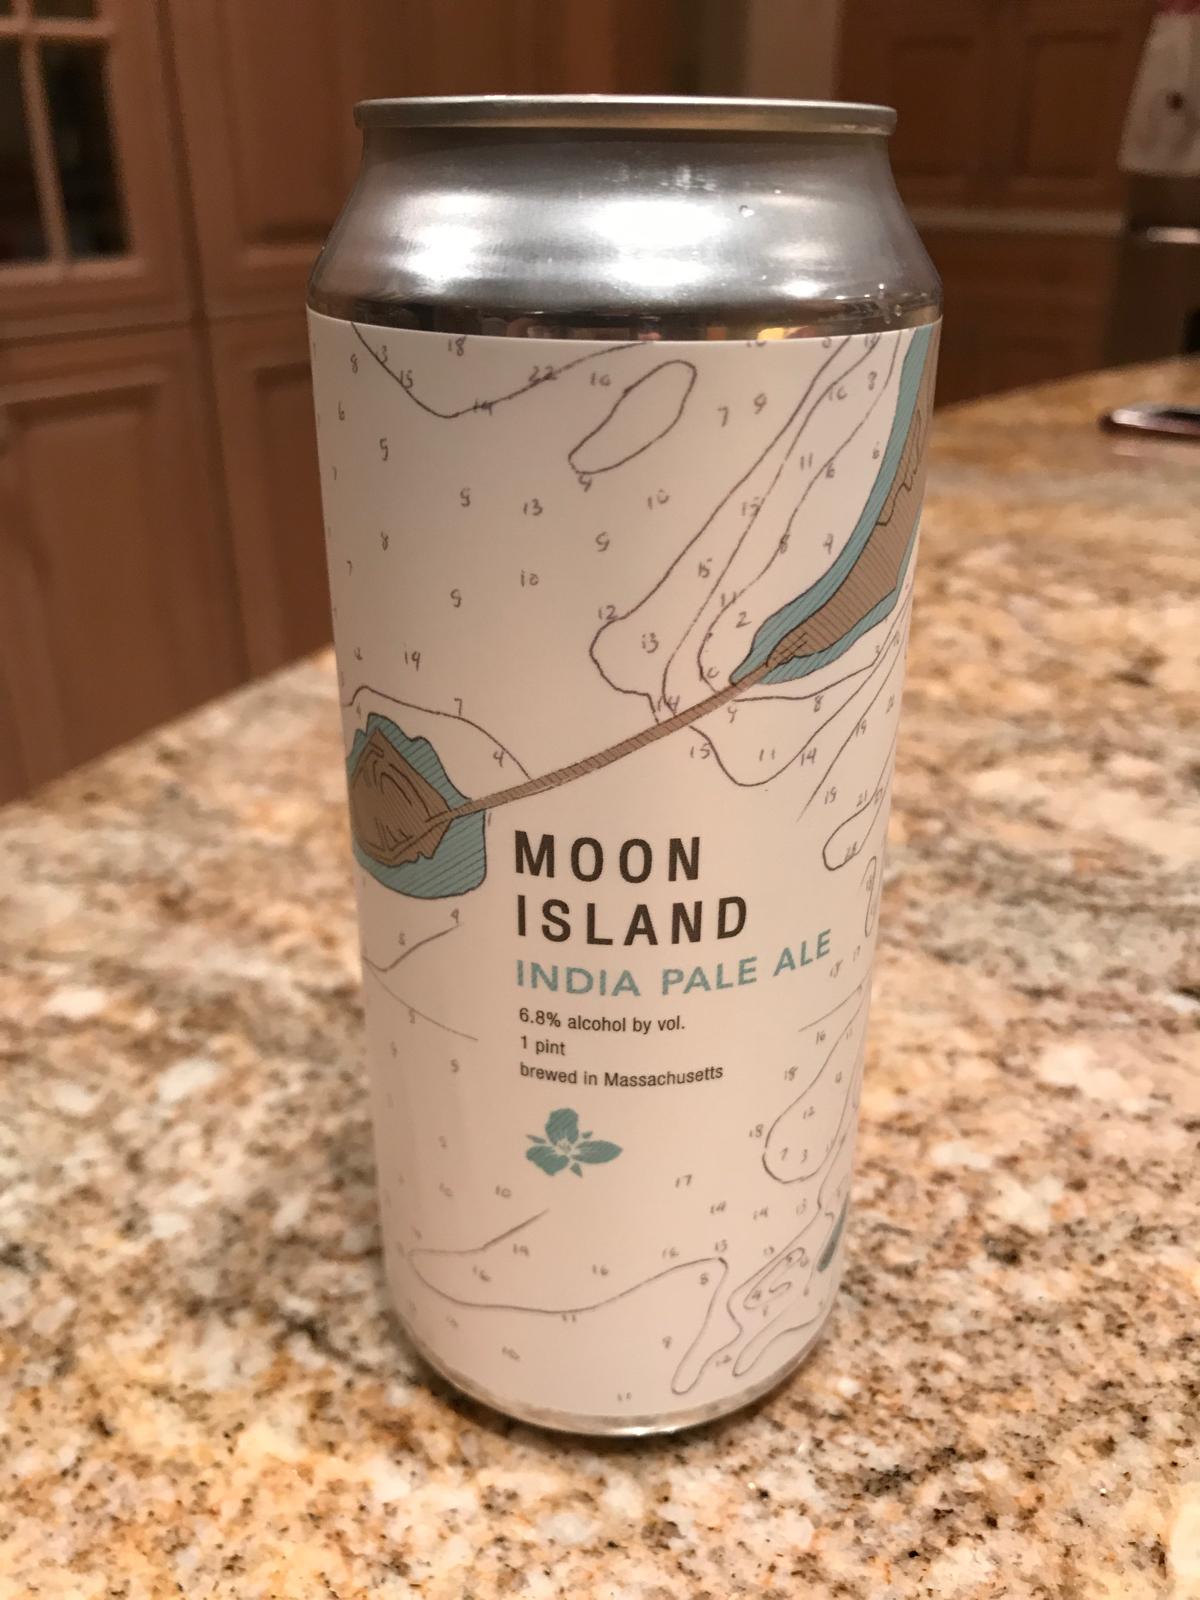 Moon Island IPA